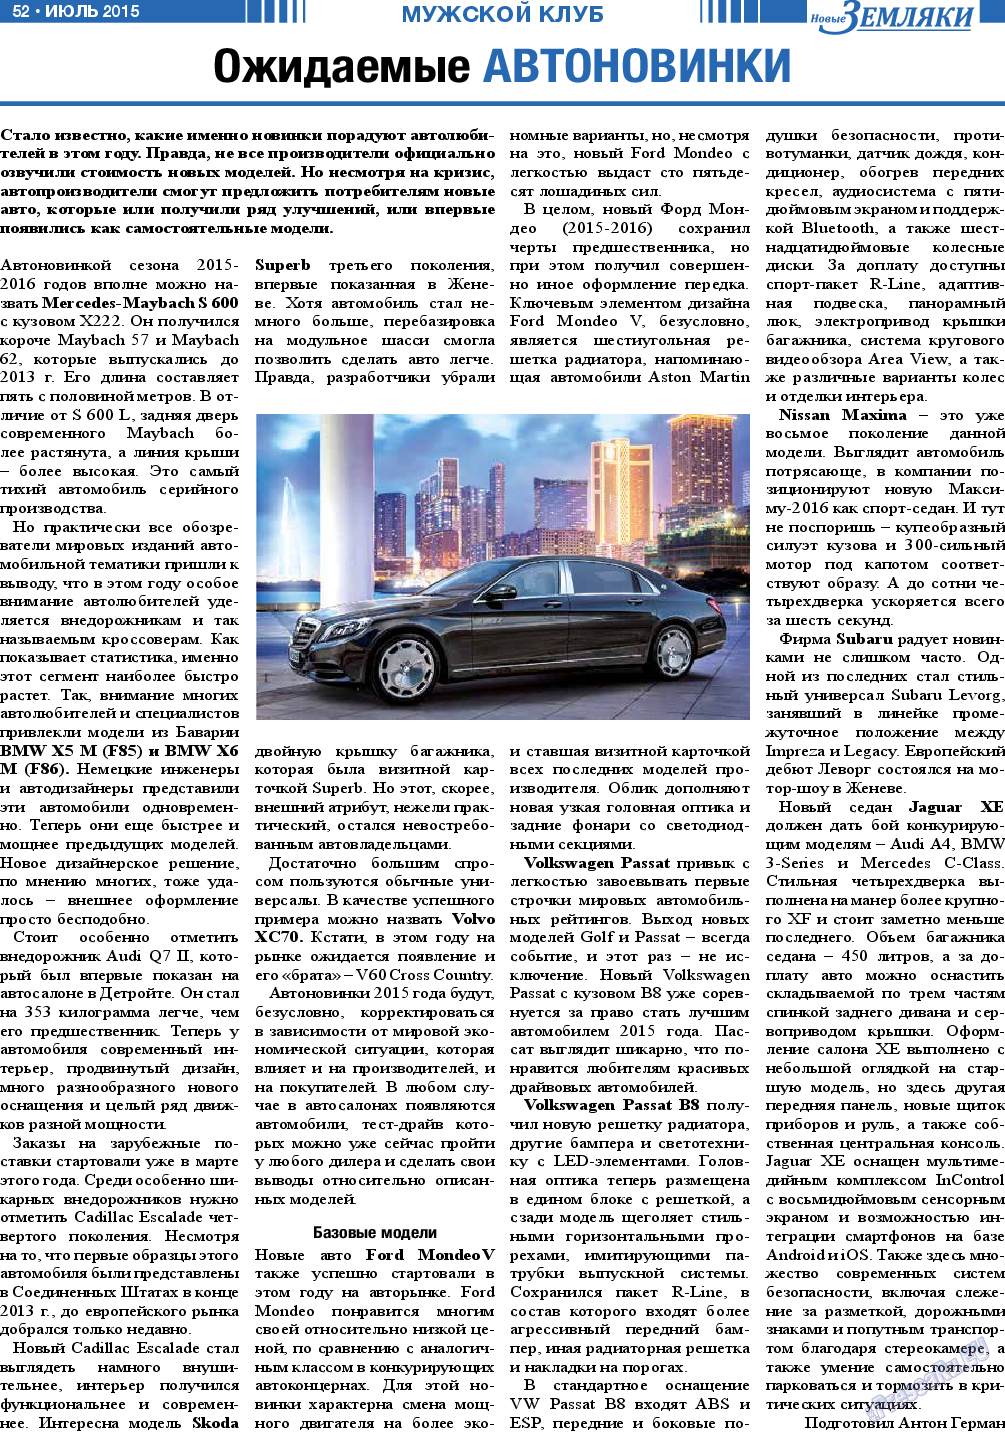 Новые Земляки, газета. 2015 №7 стр.52